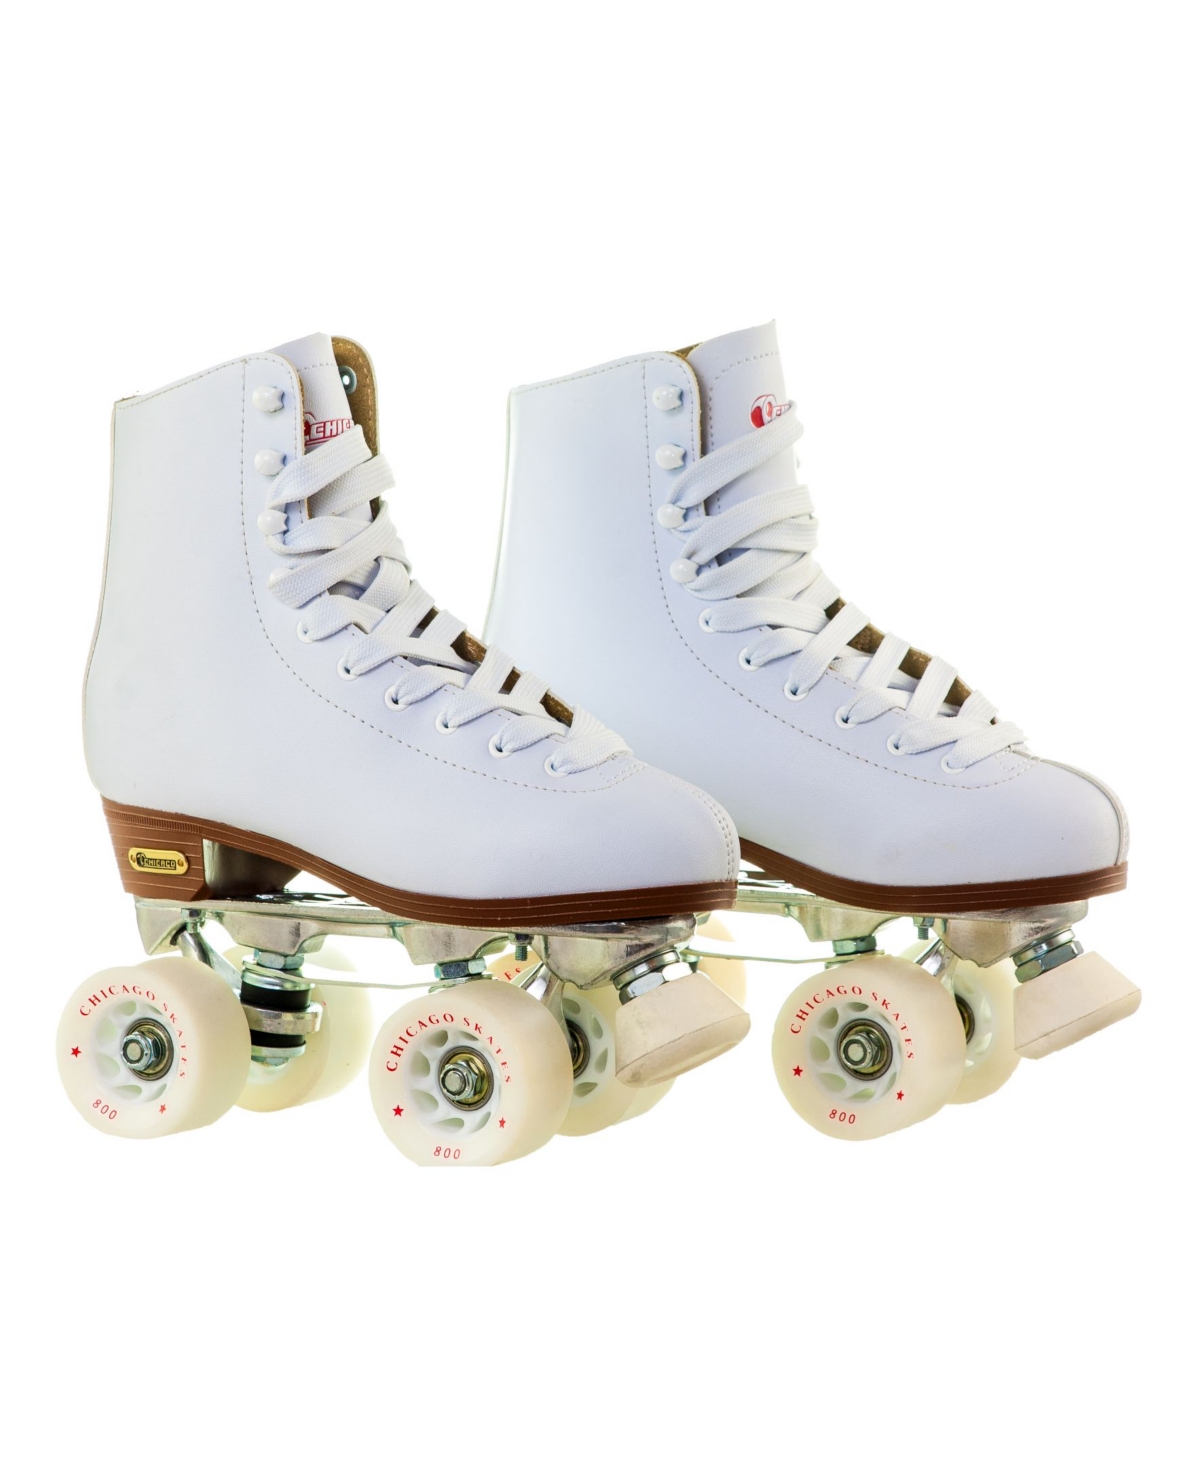 Women's Deluxe Quad Roller Rink Skates - Size 8 - White